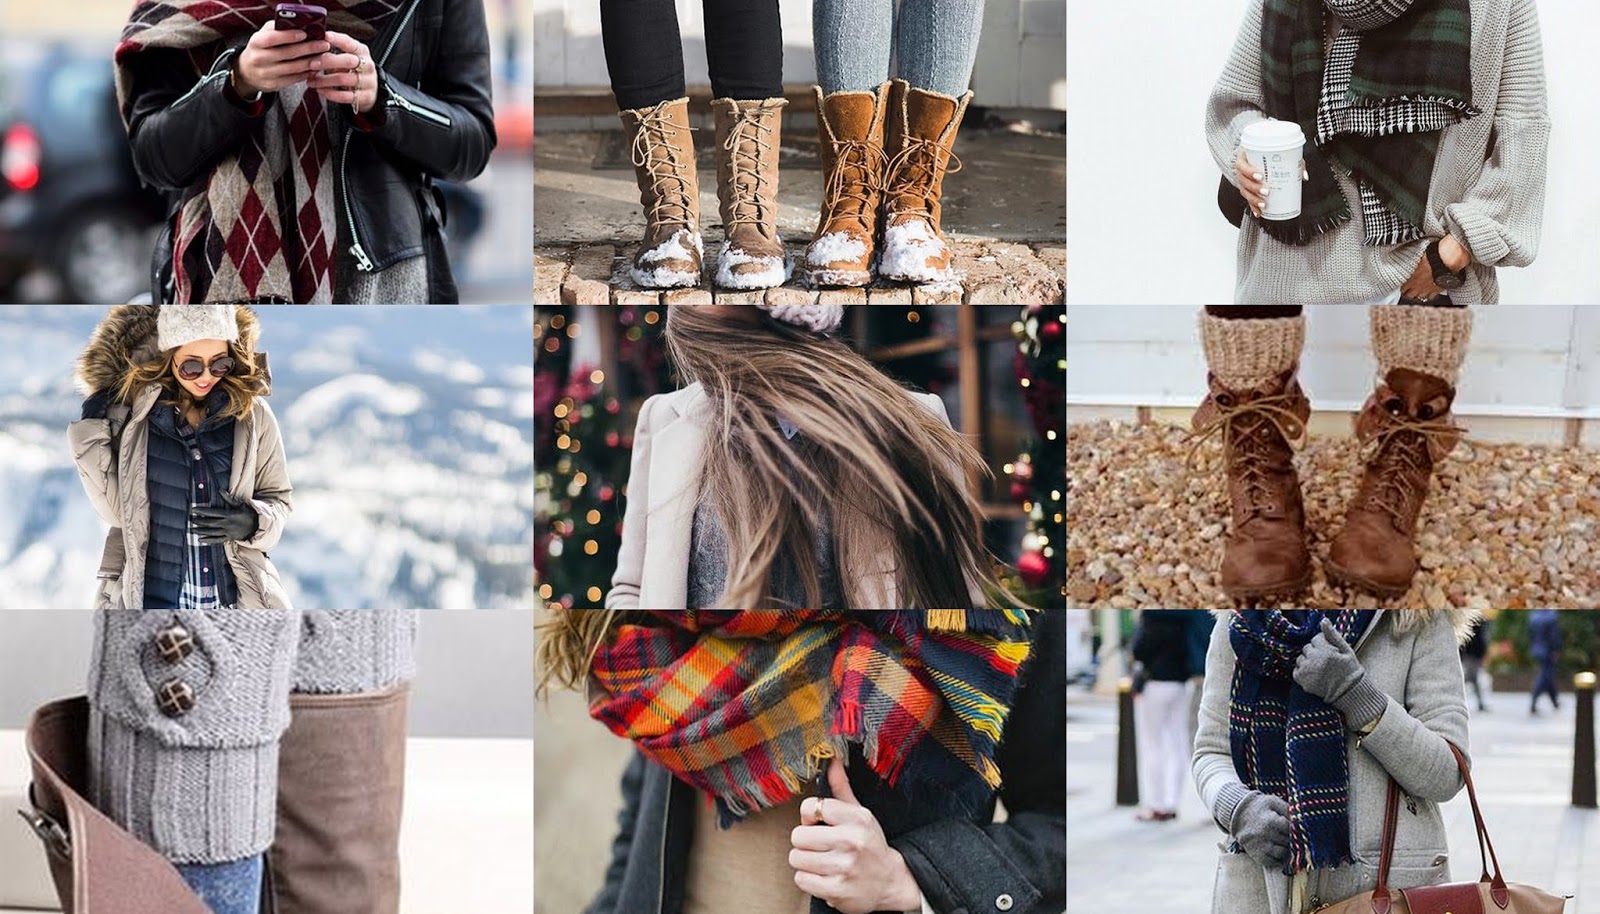 Зимой одеваться тепло. Одеться тепло и красиво. Тепло и стильно зимой. Тепло и красиво одеться зимой. Стильно но тепло одеться зимой.